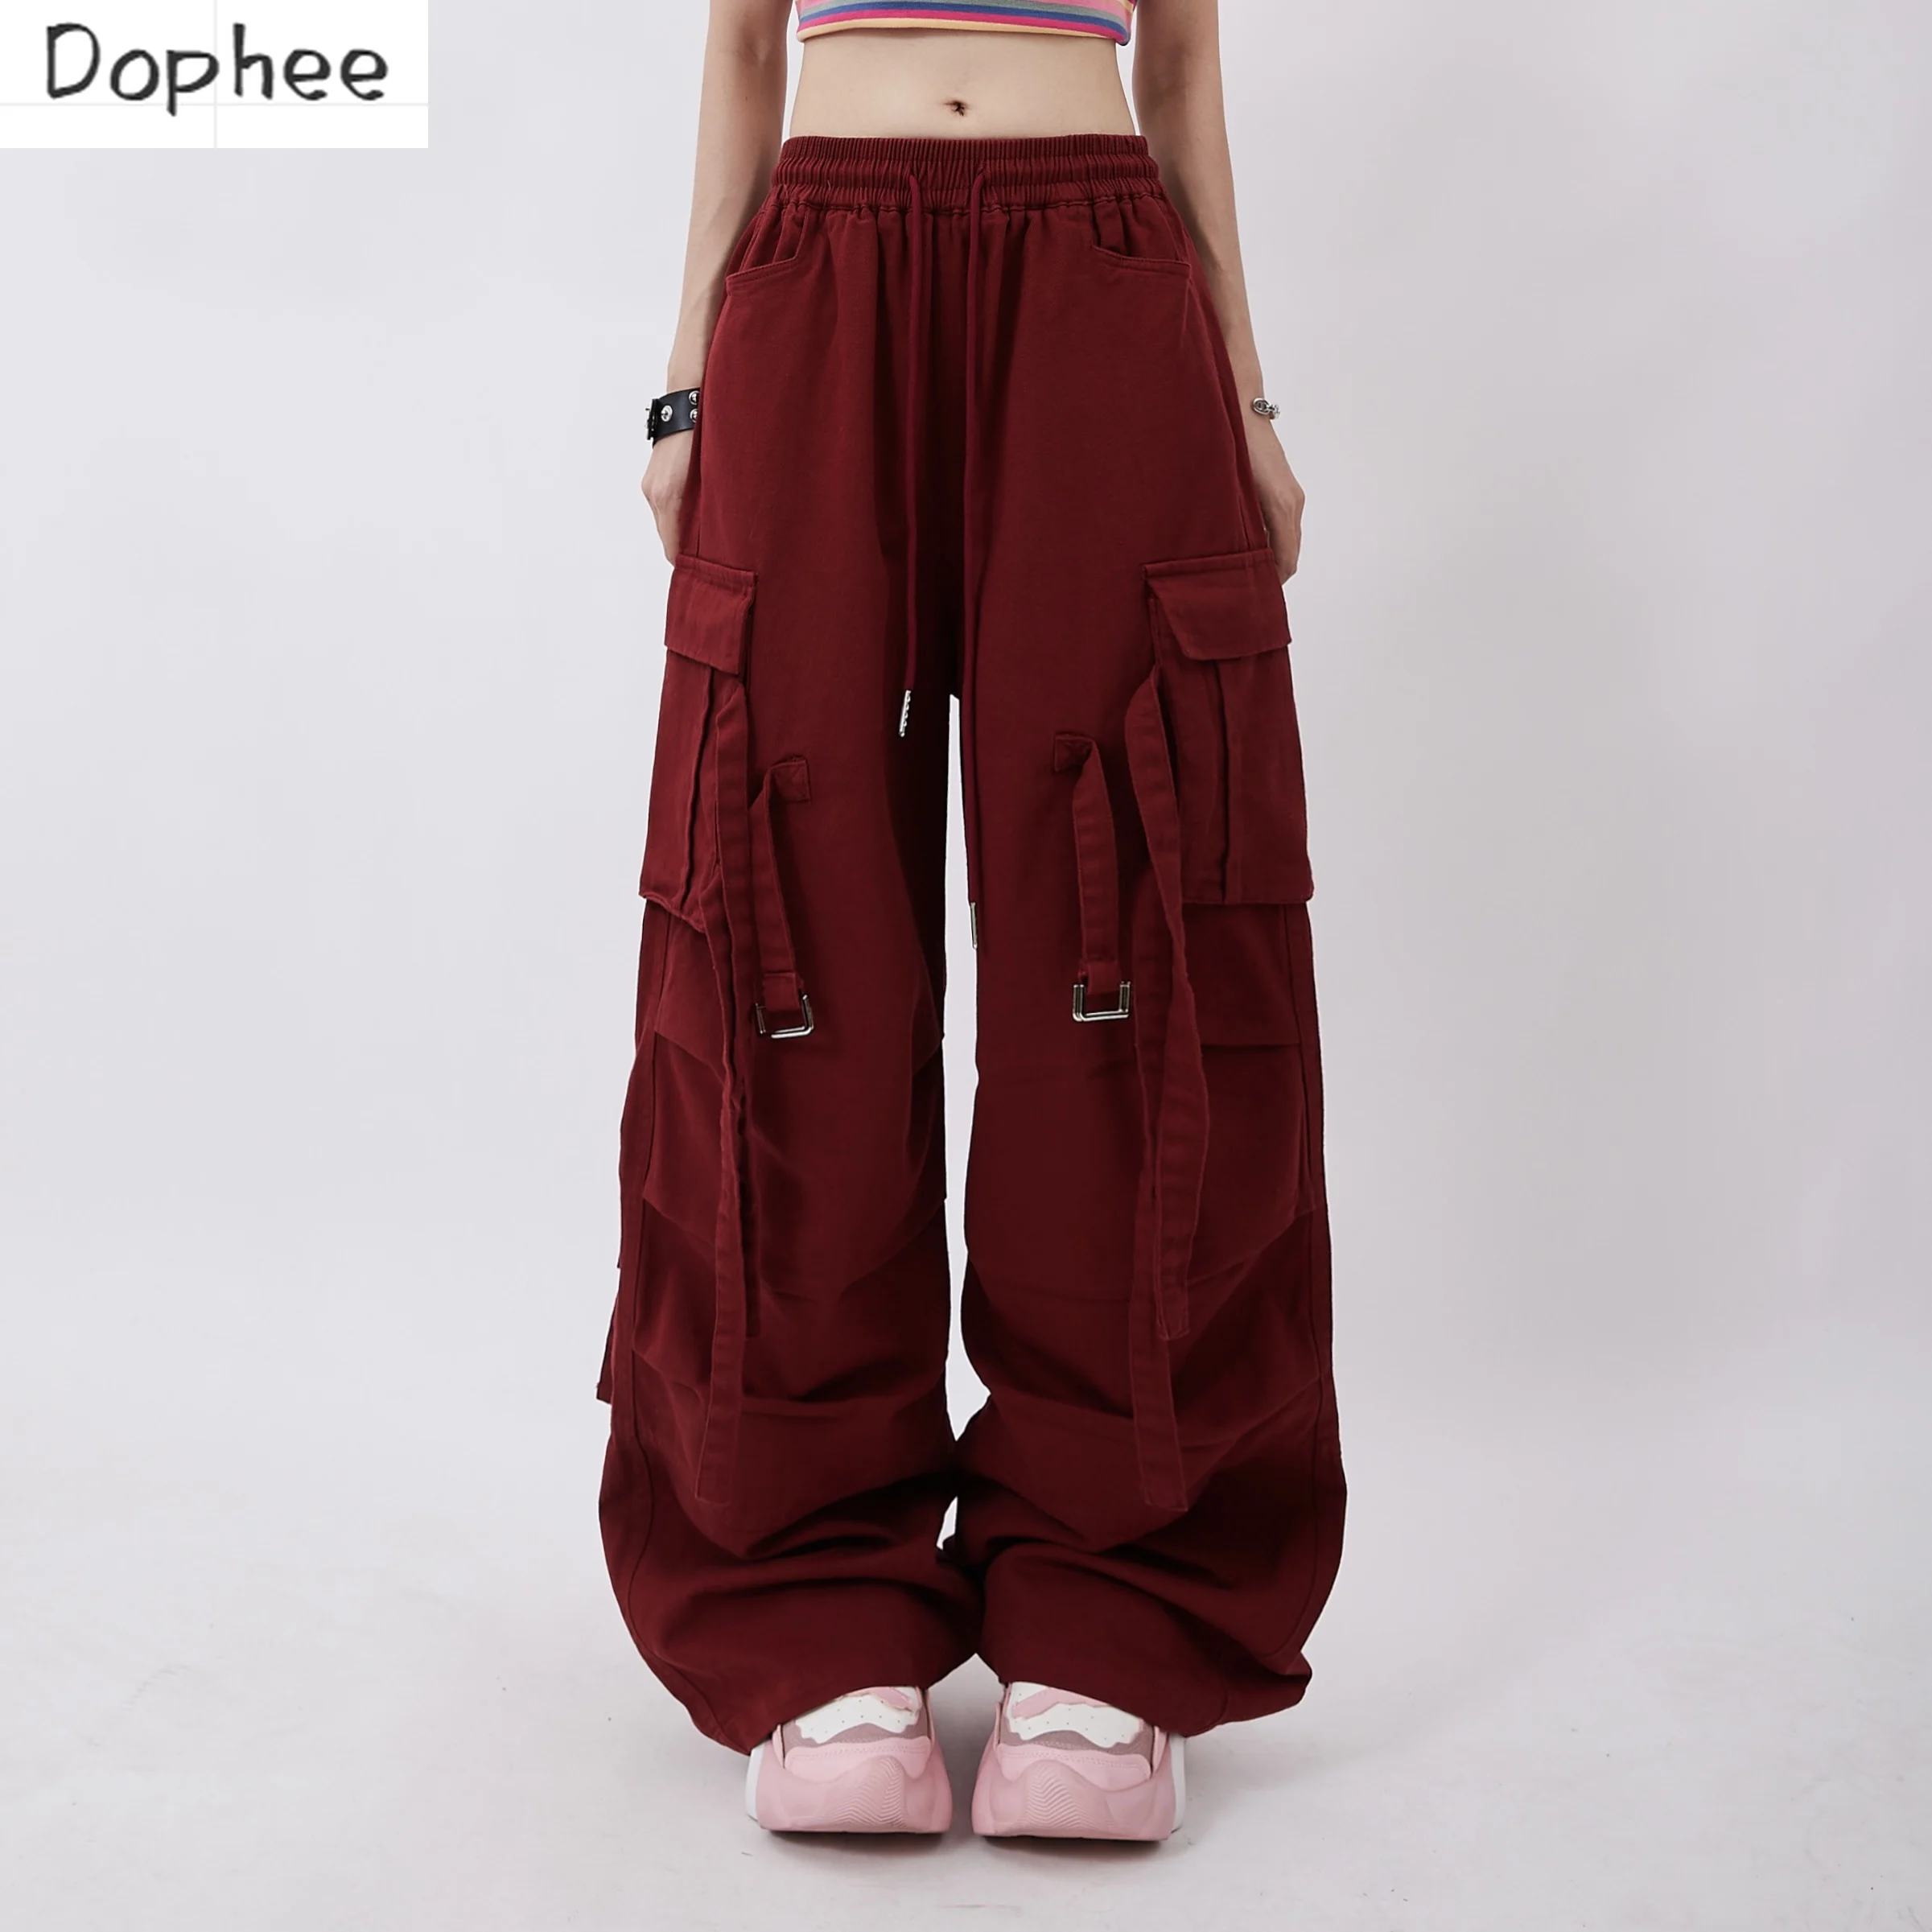 calcas-dophee-red-cargo-para-mulheres-estilo-americano-multi-bolsos-fita-calca-dopamina-reta-calcas-elasticas-para-danca-cordao